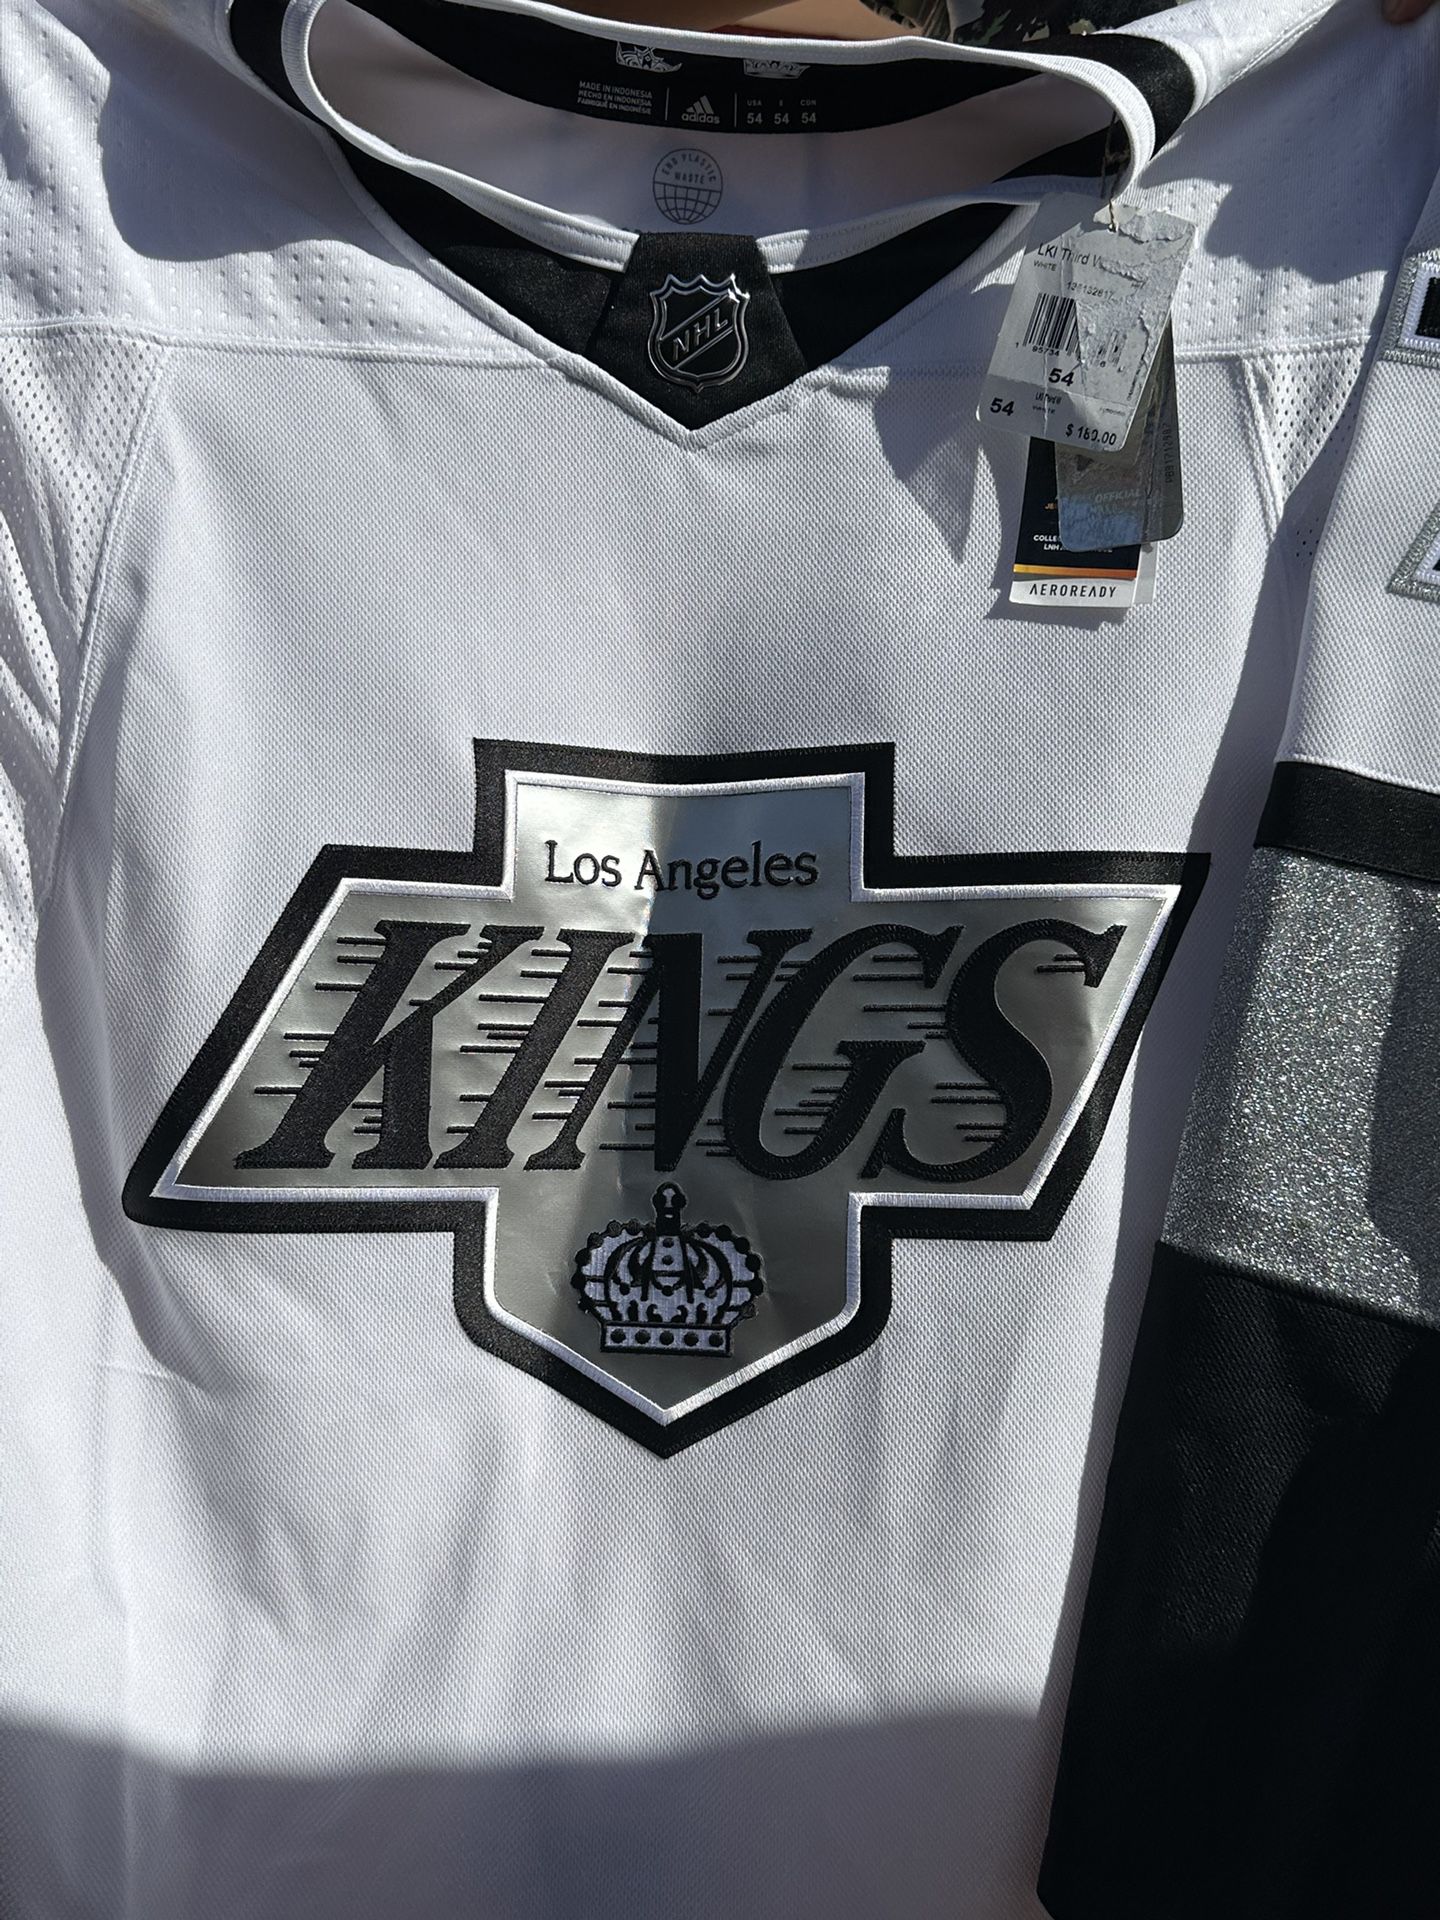 LA Kings Jersey for Sale in Los Angeles, CA - OfferUp